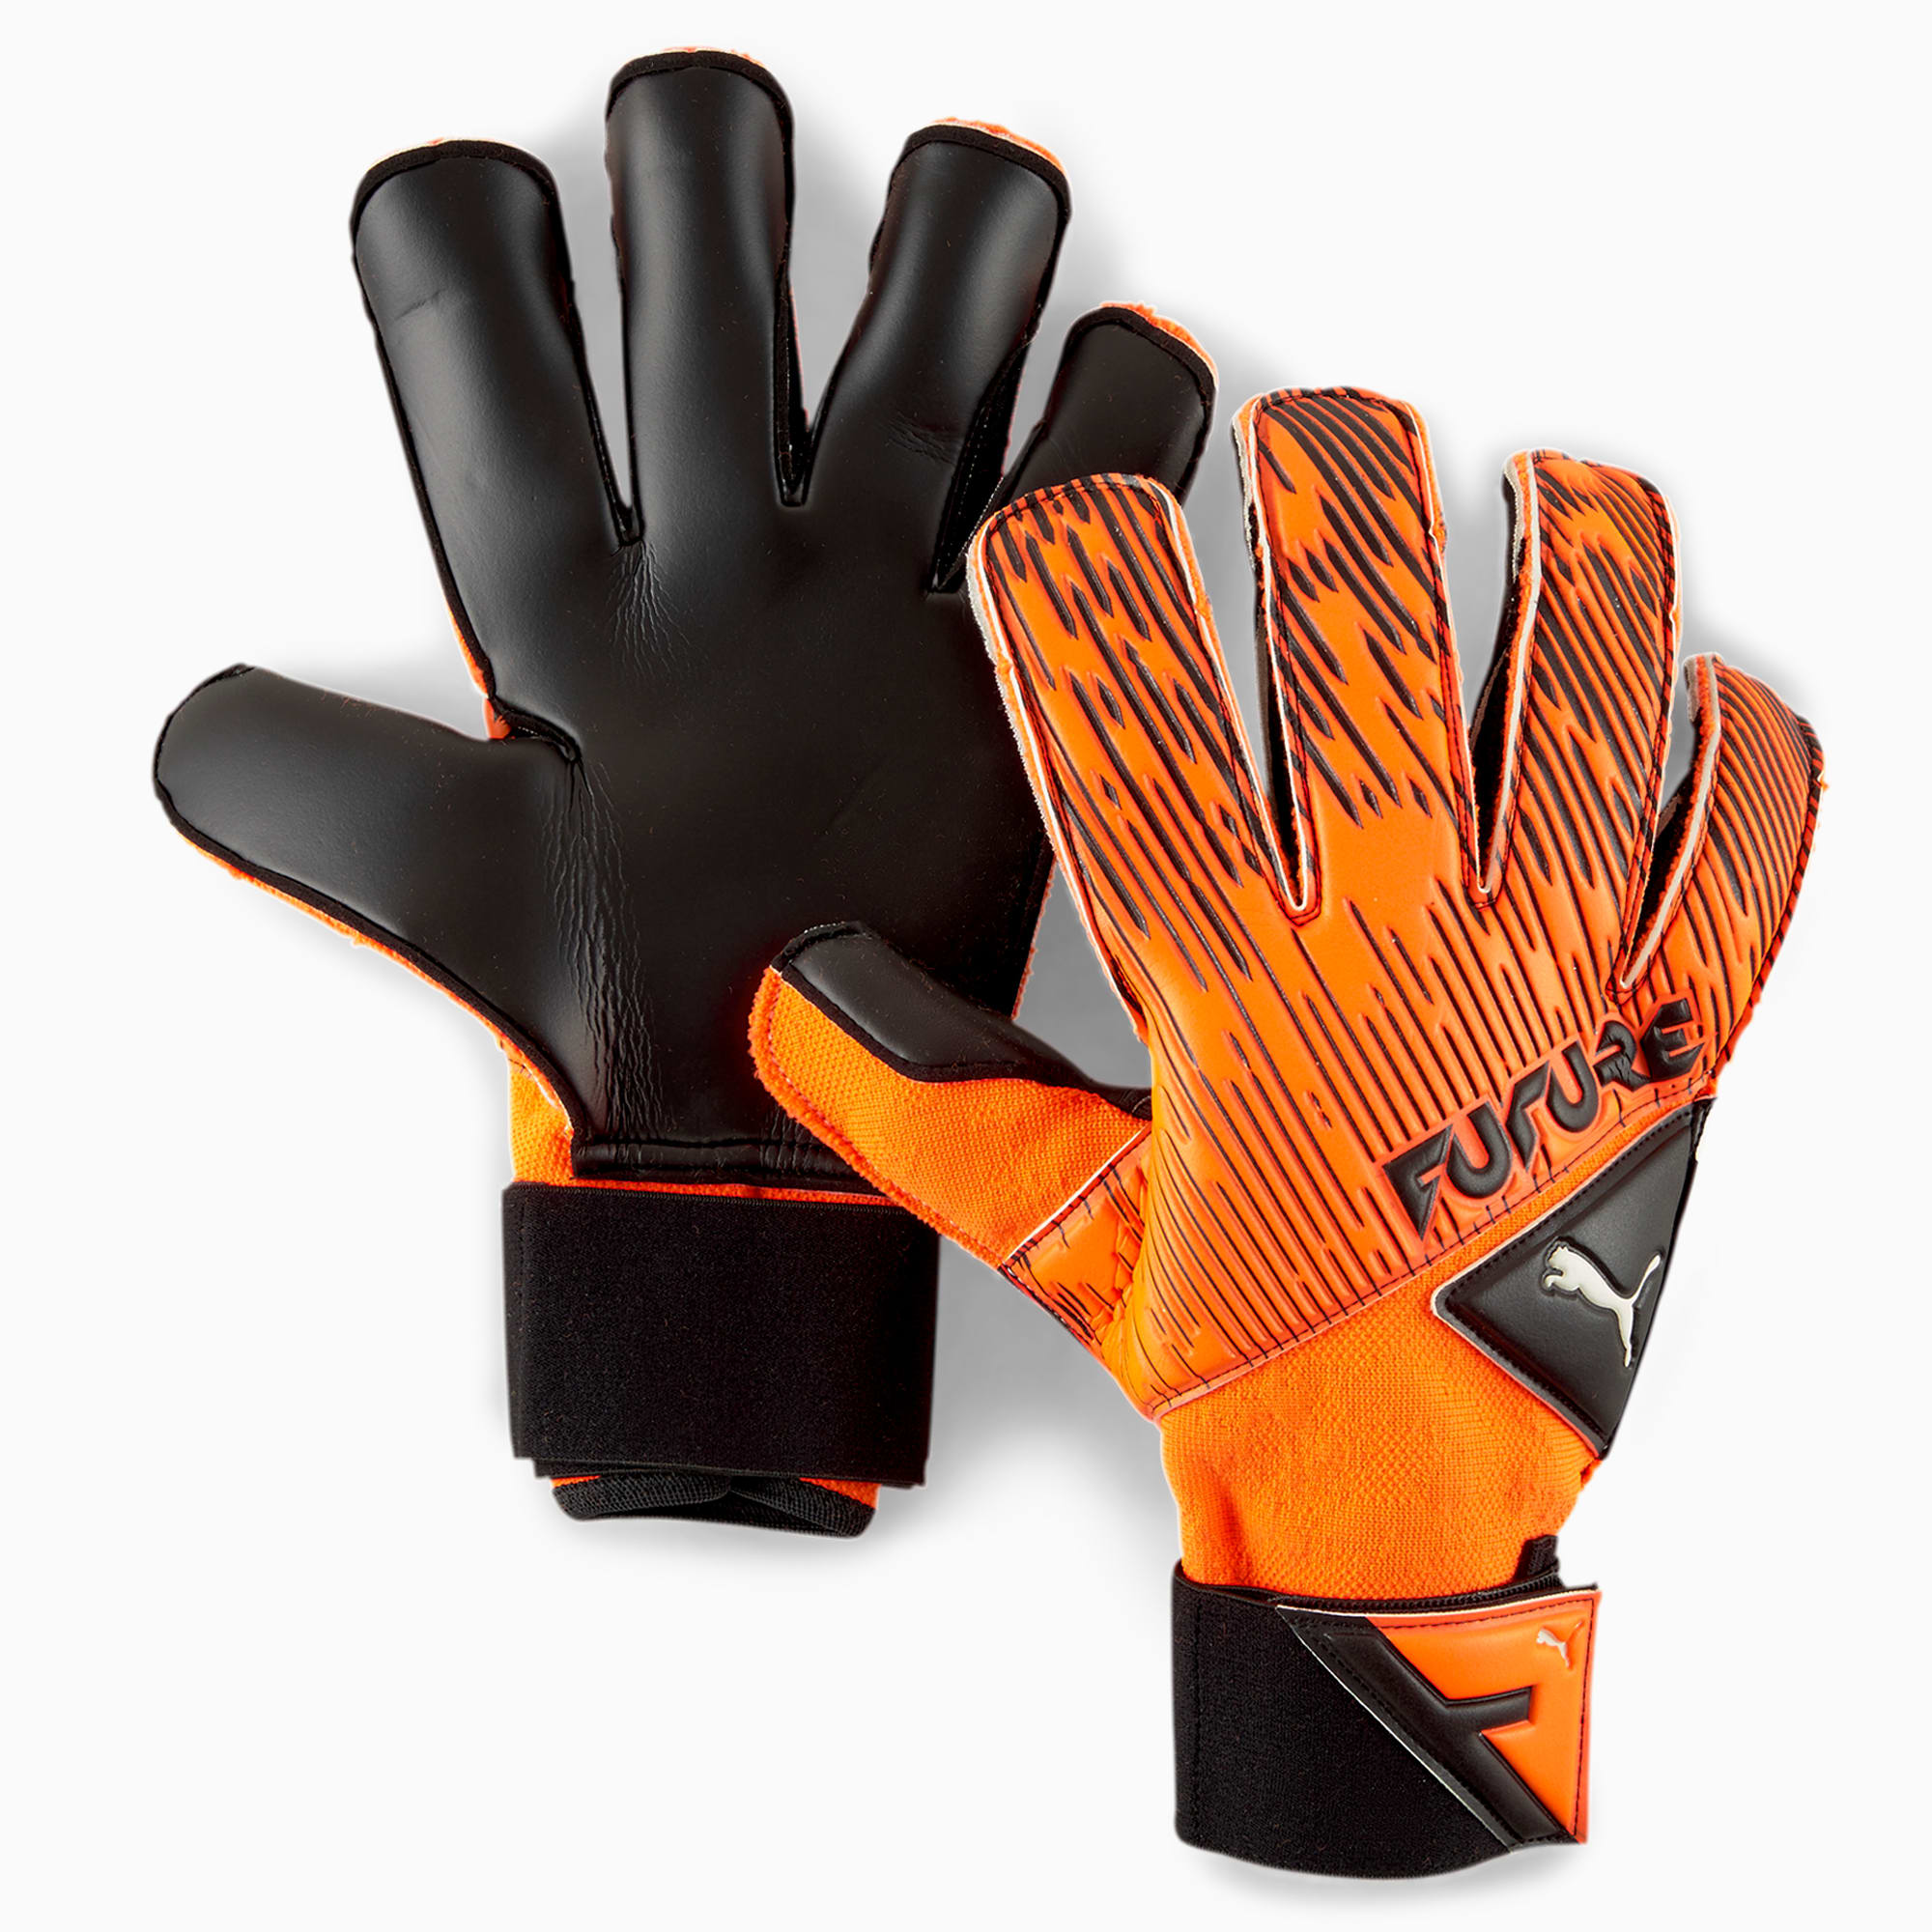 Puma公式 フューチャー グリップ 2 Sgc サッカー ゴールキーパーグローブ メンズ Shocking Orange Black White プーマ アクセサリー プーマ